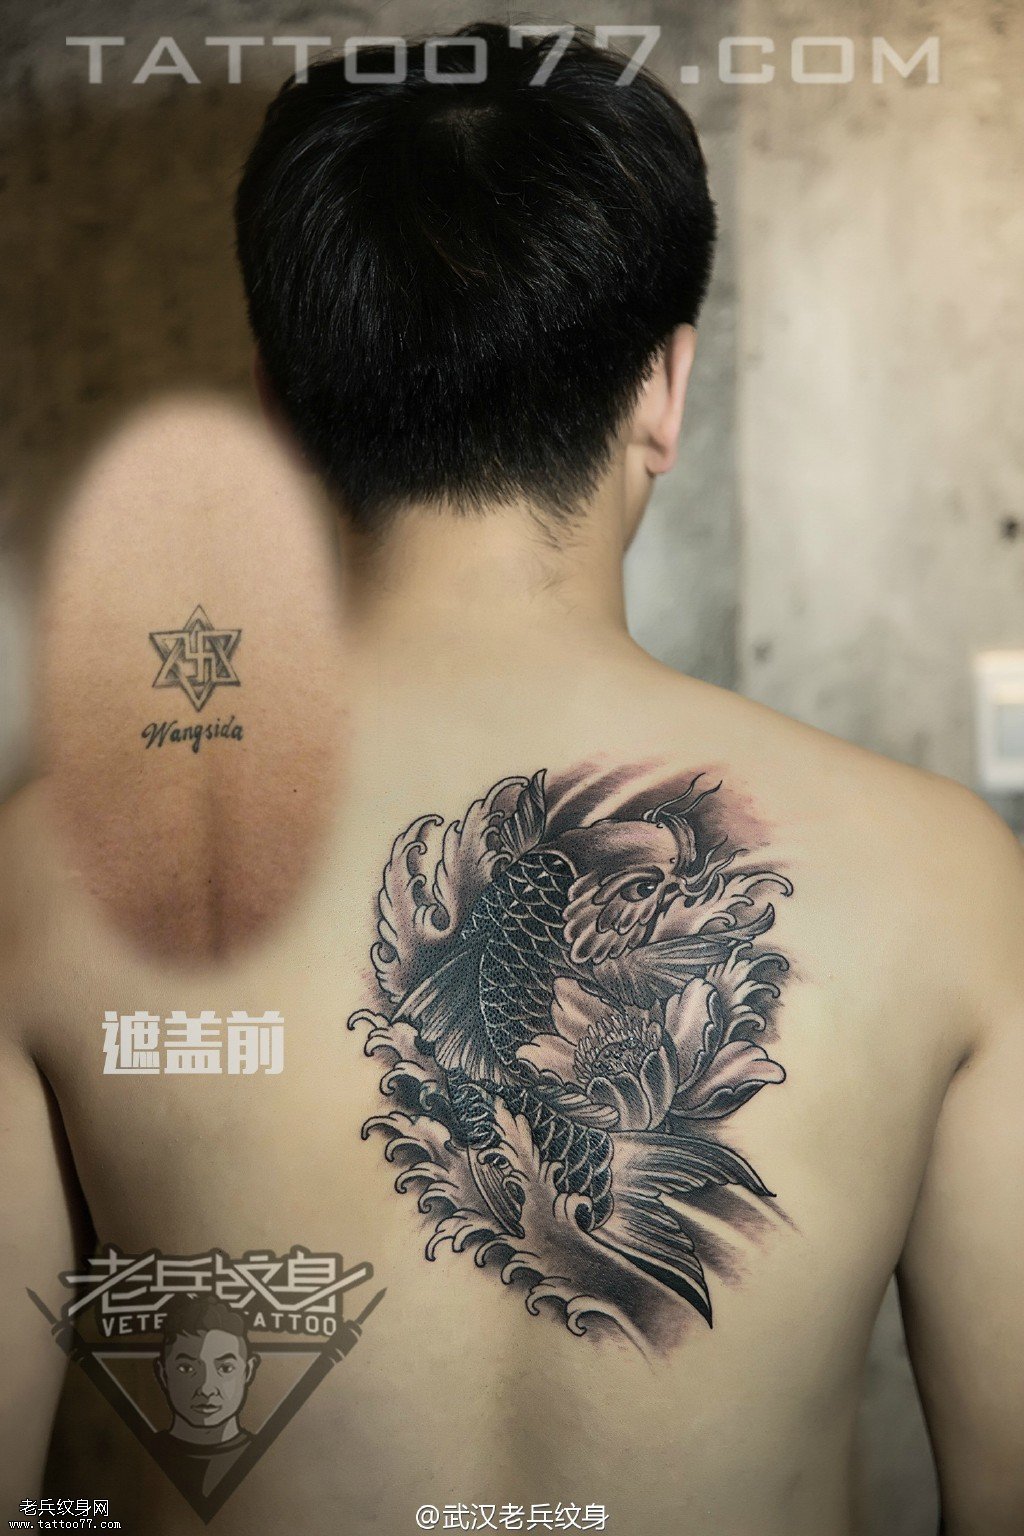 肩胛莲花鲤鱼纹身图案作品遮盖旧纹身